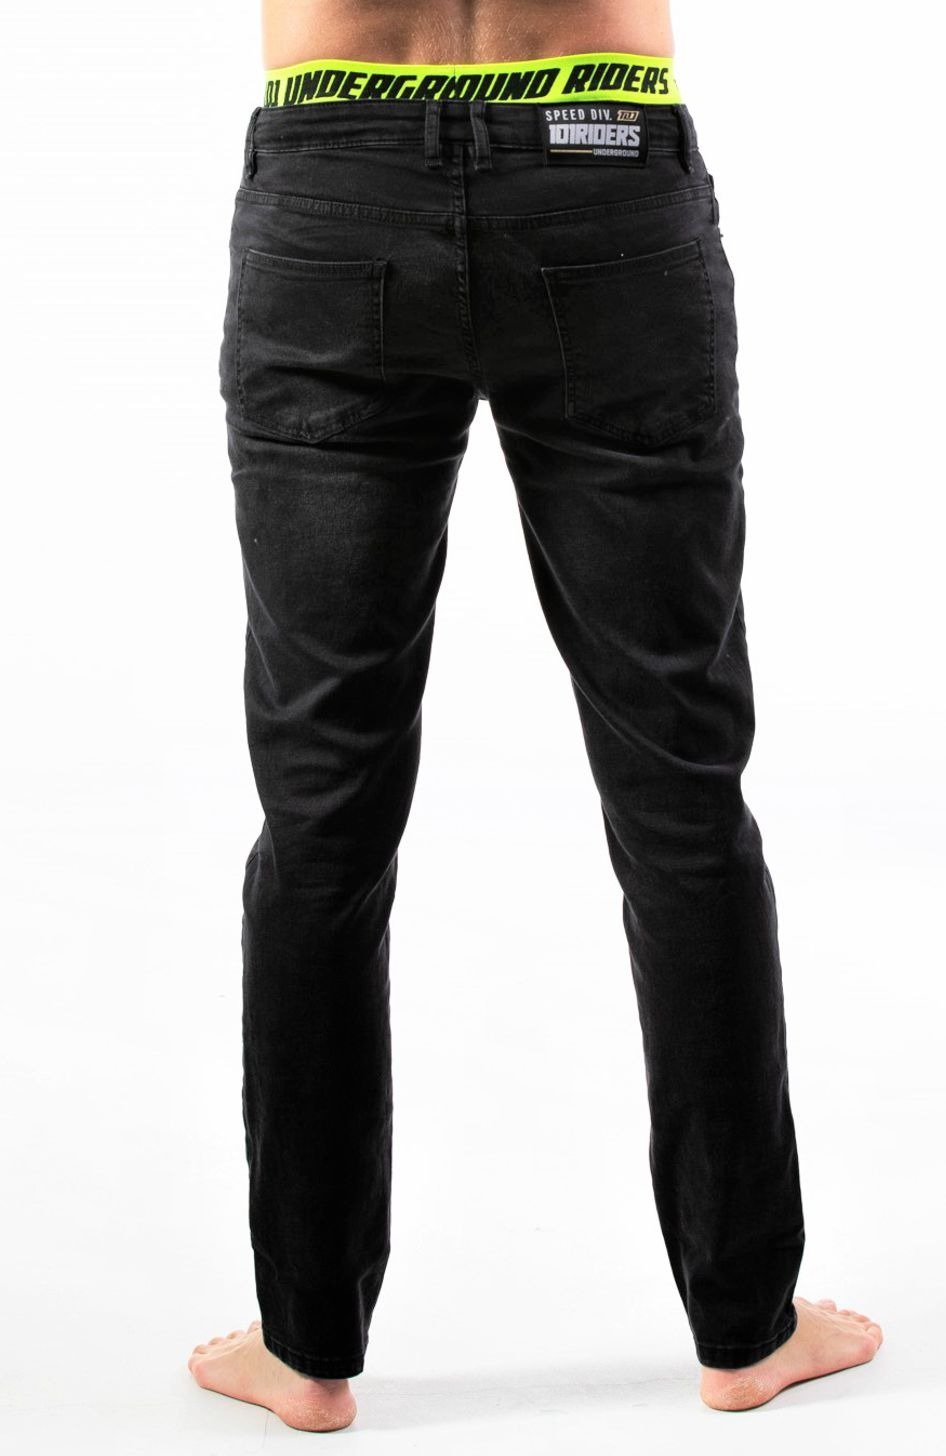 Obrázek produktu kalhoty, jeansy , SPRINGBASE 101 RIDERS (černé) 210190